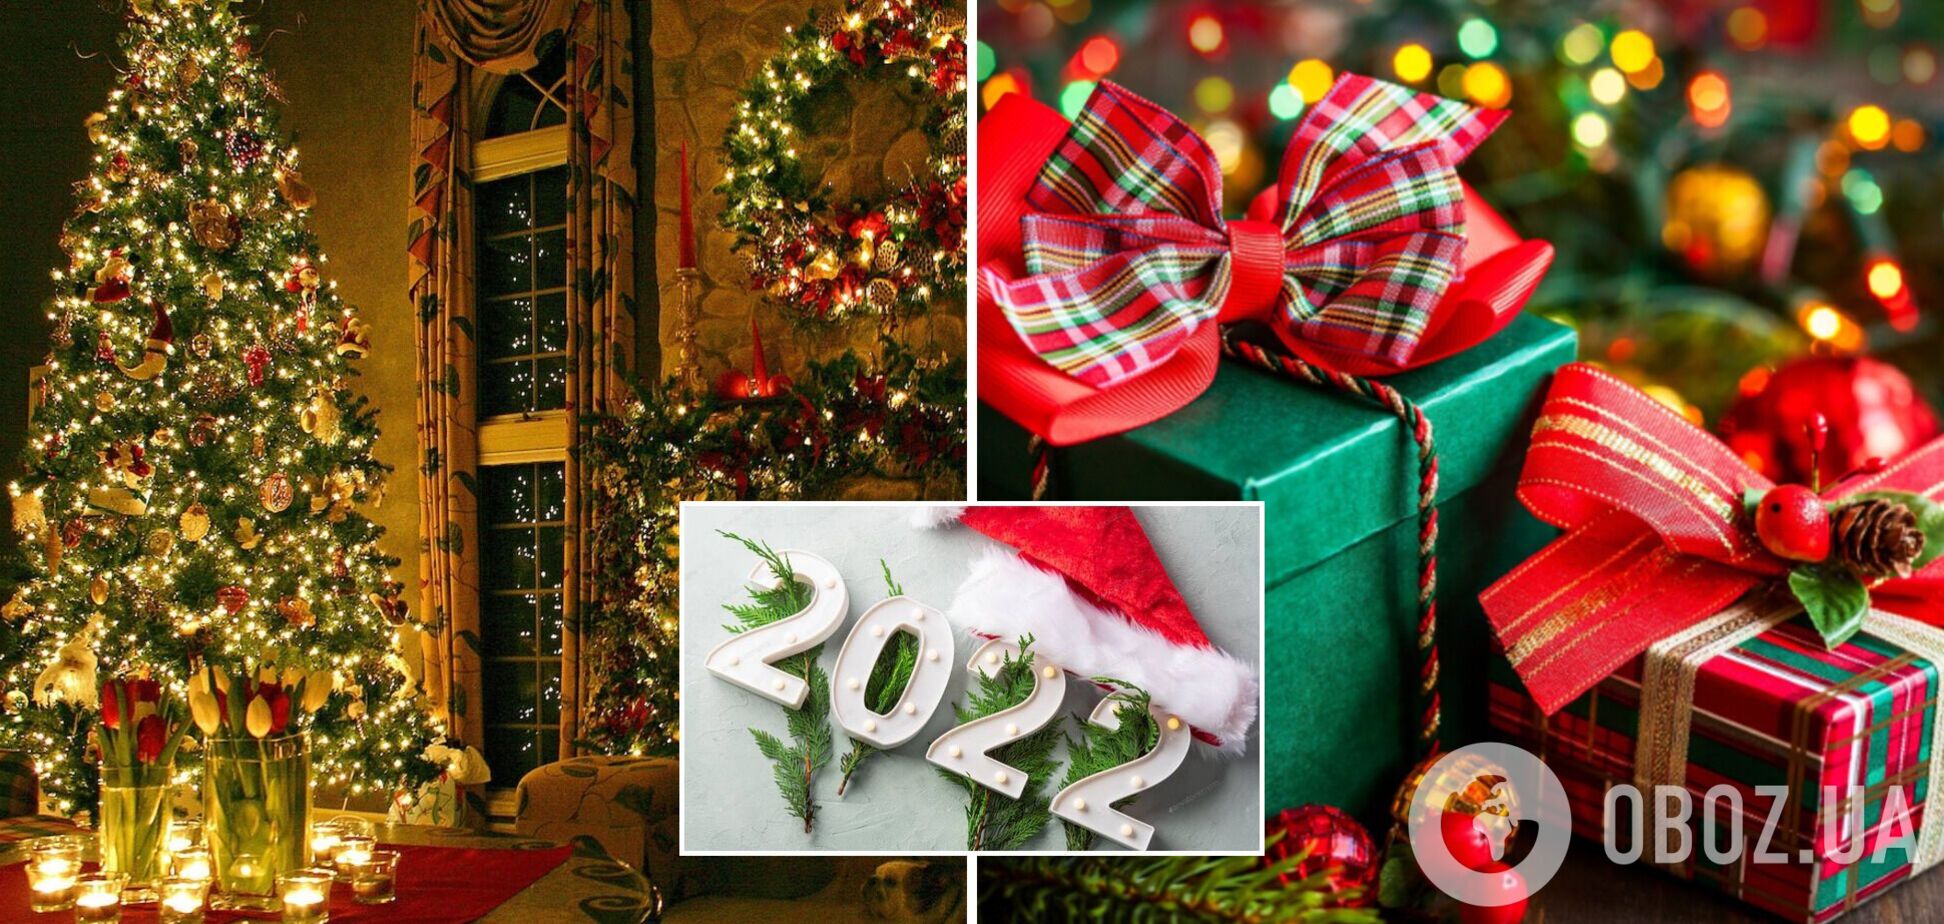 Украинцы рассказали, какие подарки больше всего хотели бы получить на Новый год: результаты соцопроса